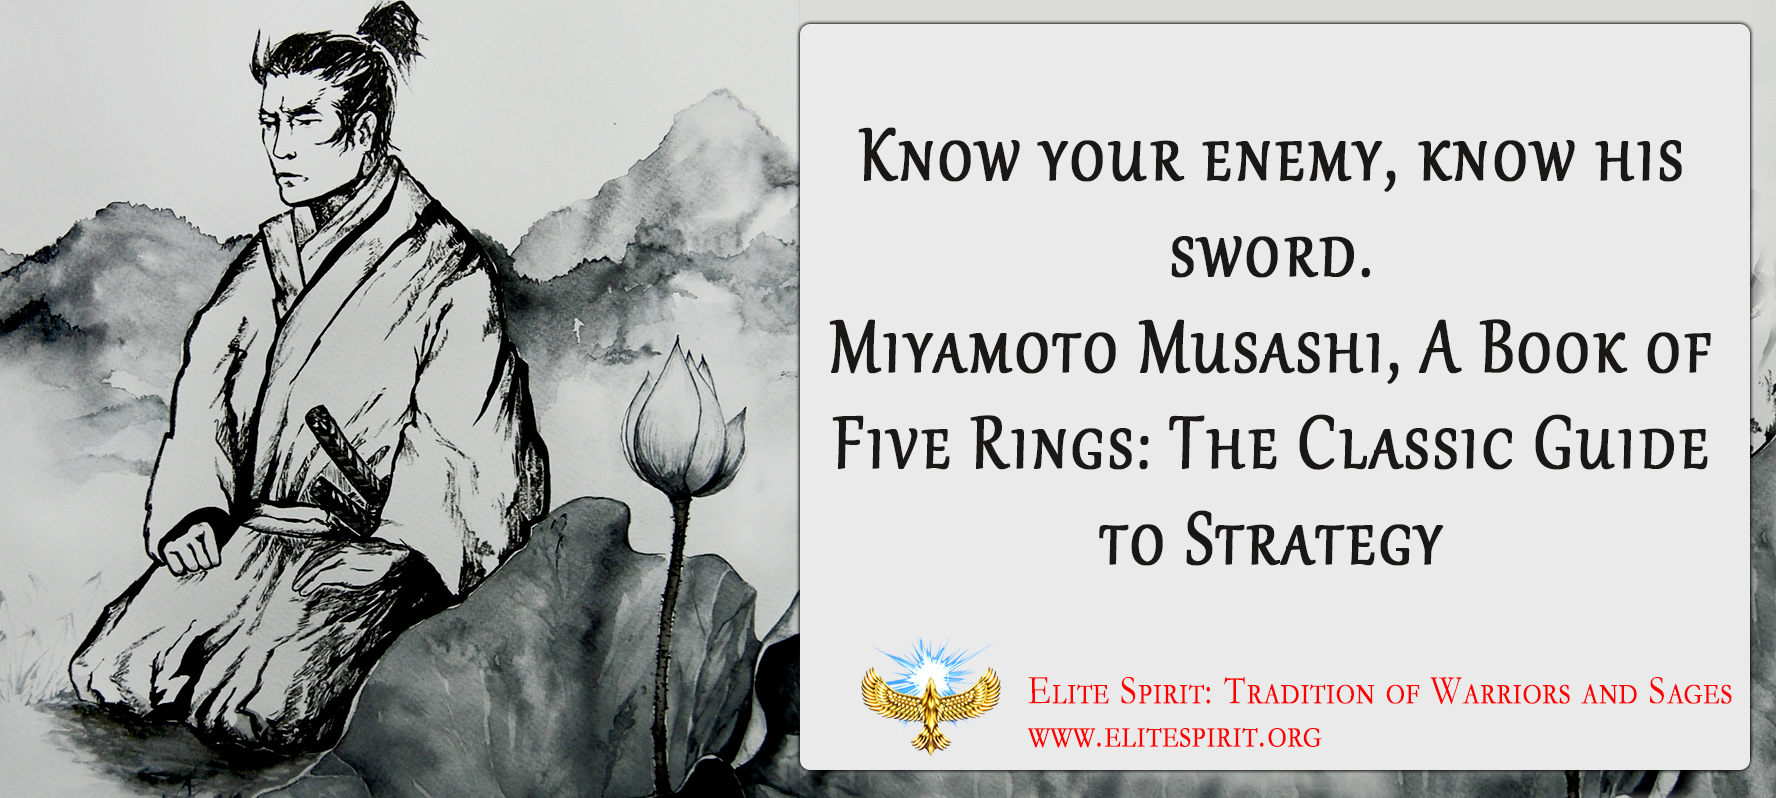 Miyamoto Musashi Quote Saying